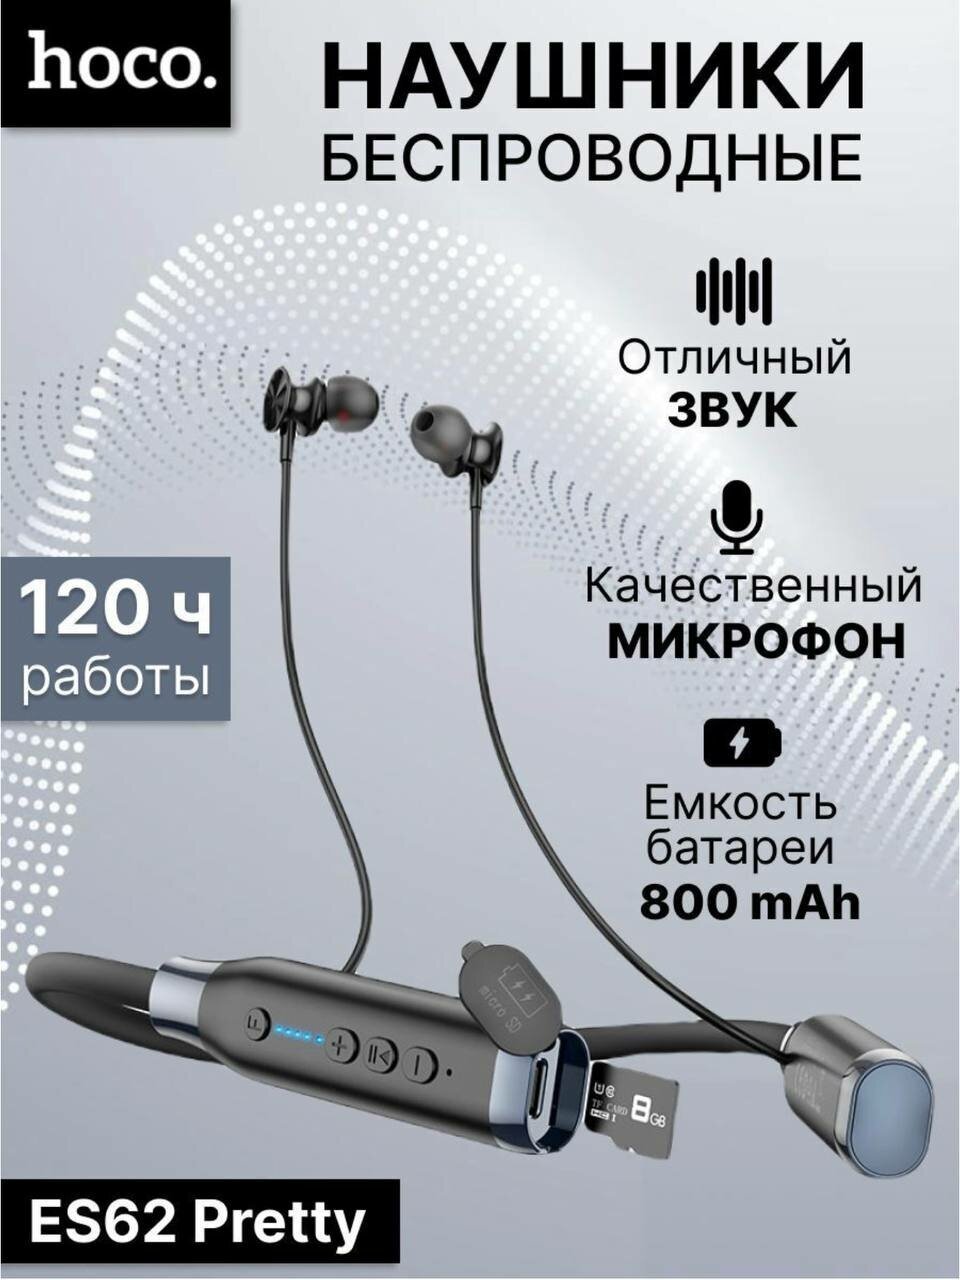 Беспроводные Bluetooth наушники HOCO ES62, 120 часов музыки. внутриканальные, спортивные, с поддержкой карт памяти